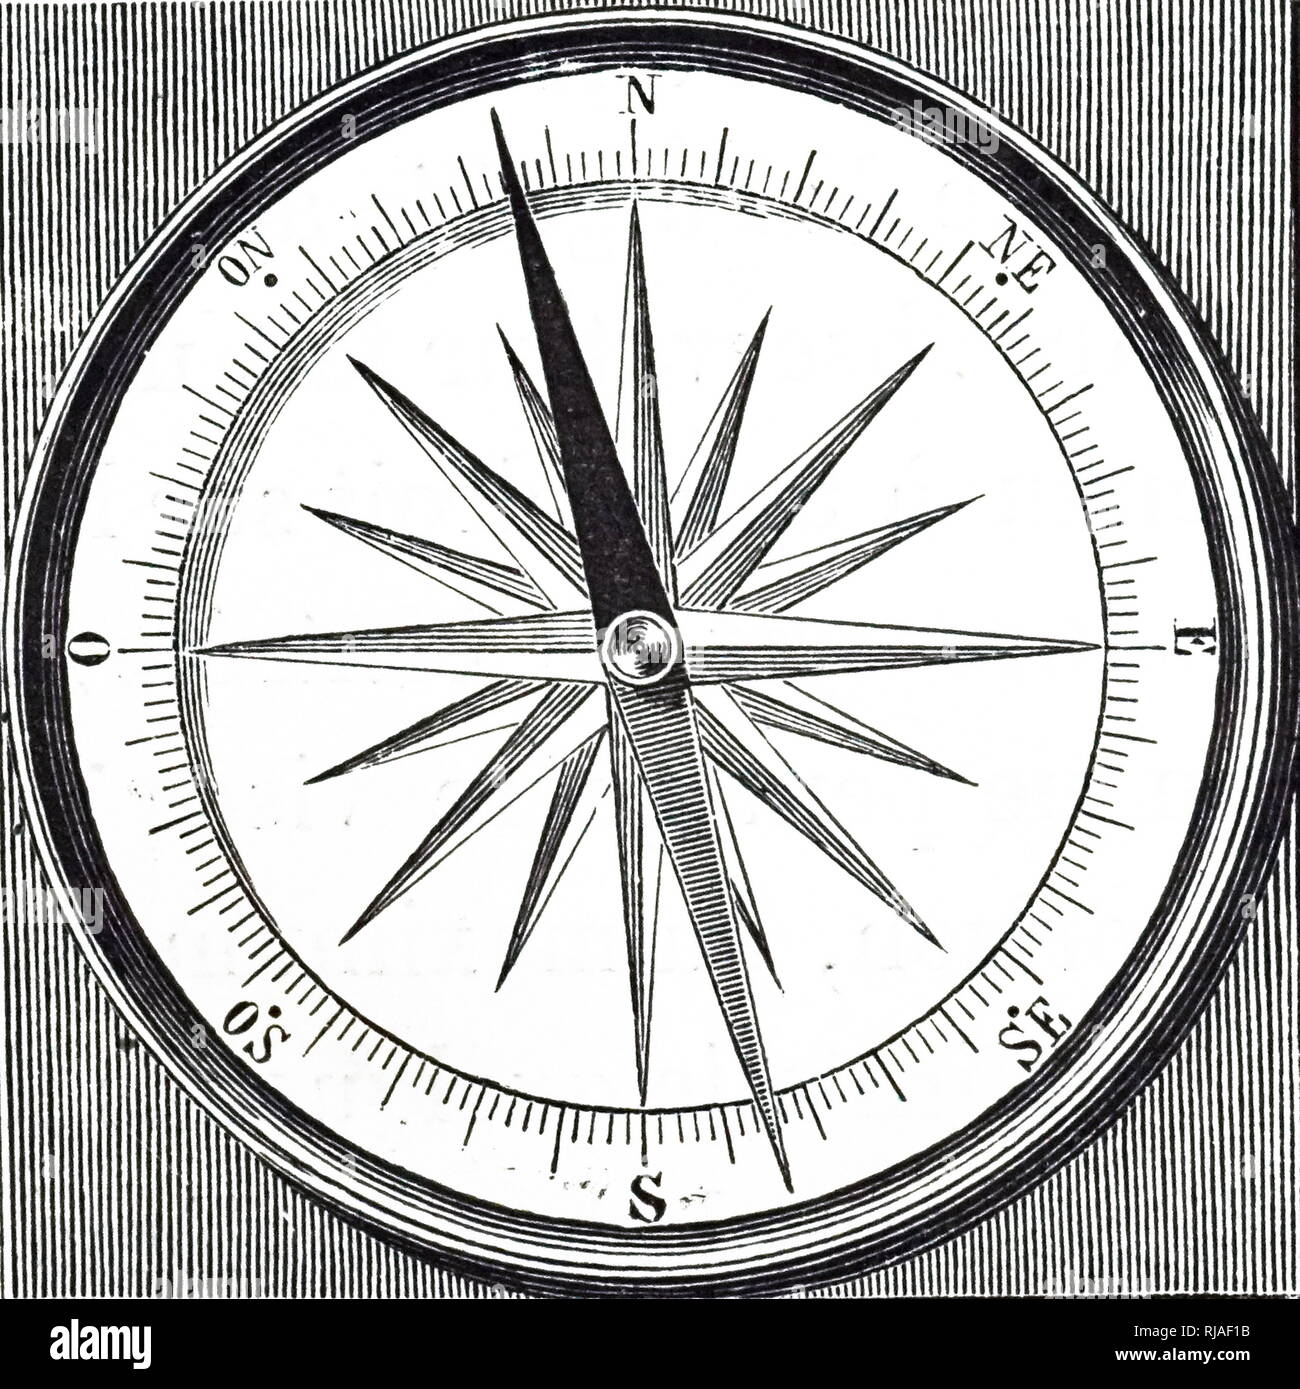 Ein kupferstich mit der Darstellung eines Kompass zeigt True North und die  Richtung der Nadel auf den magnetischen Nordpol. Vom 19. Jahrhundert  Stockfotografie - Alamy